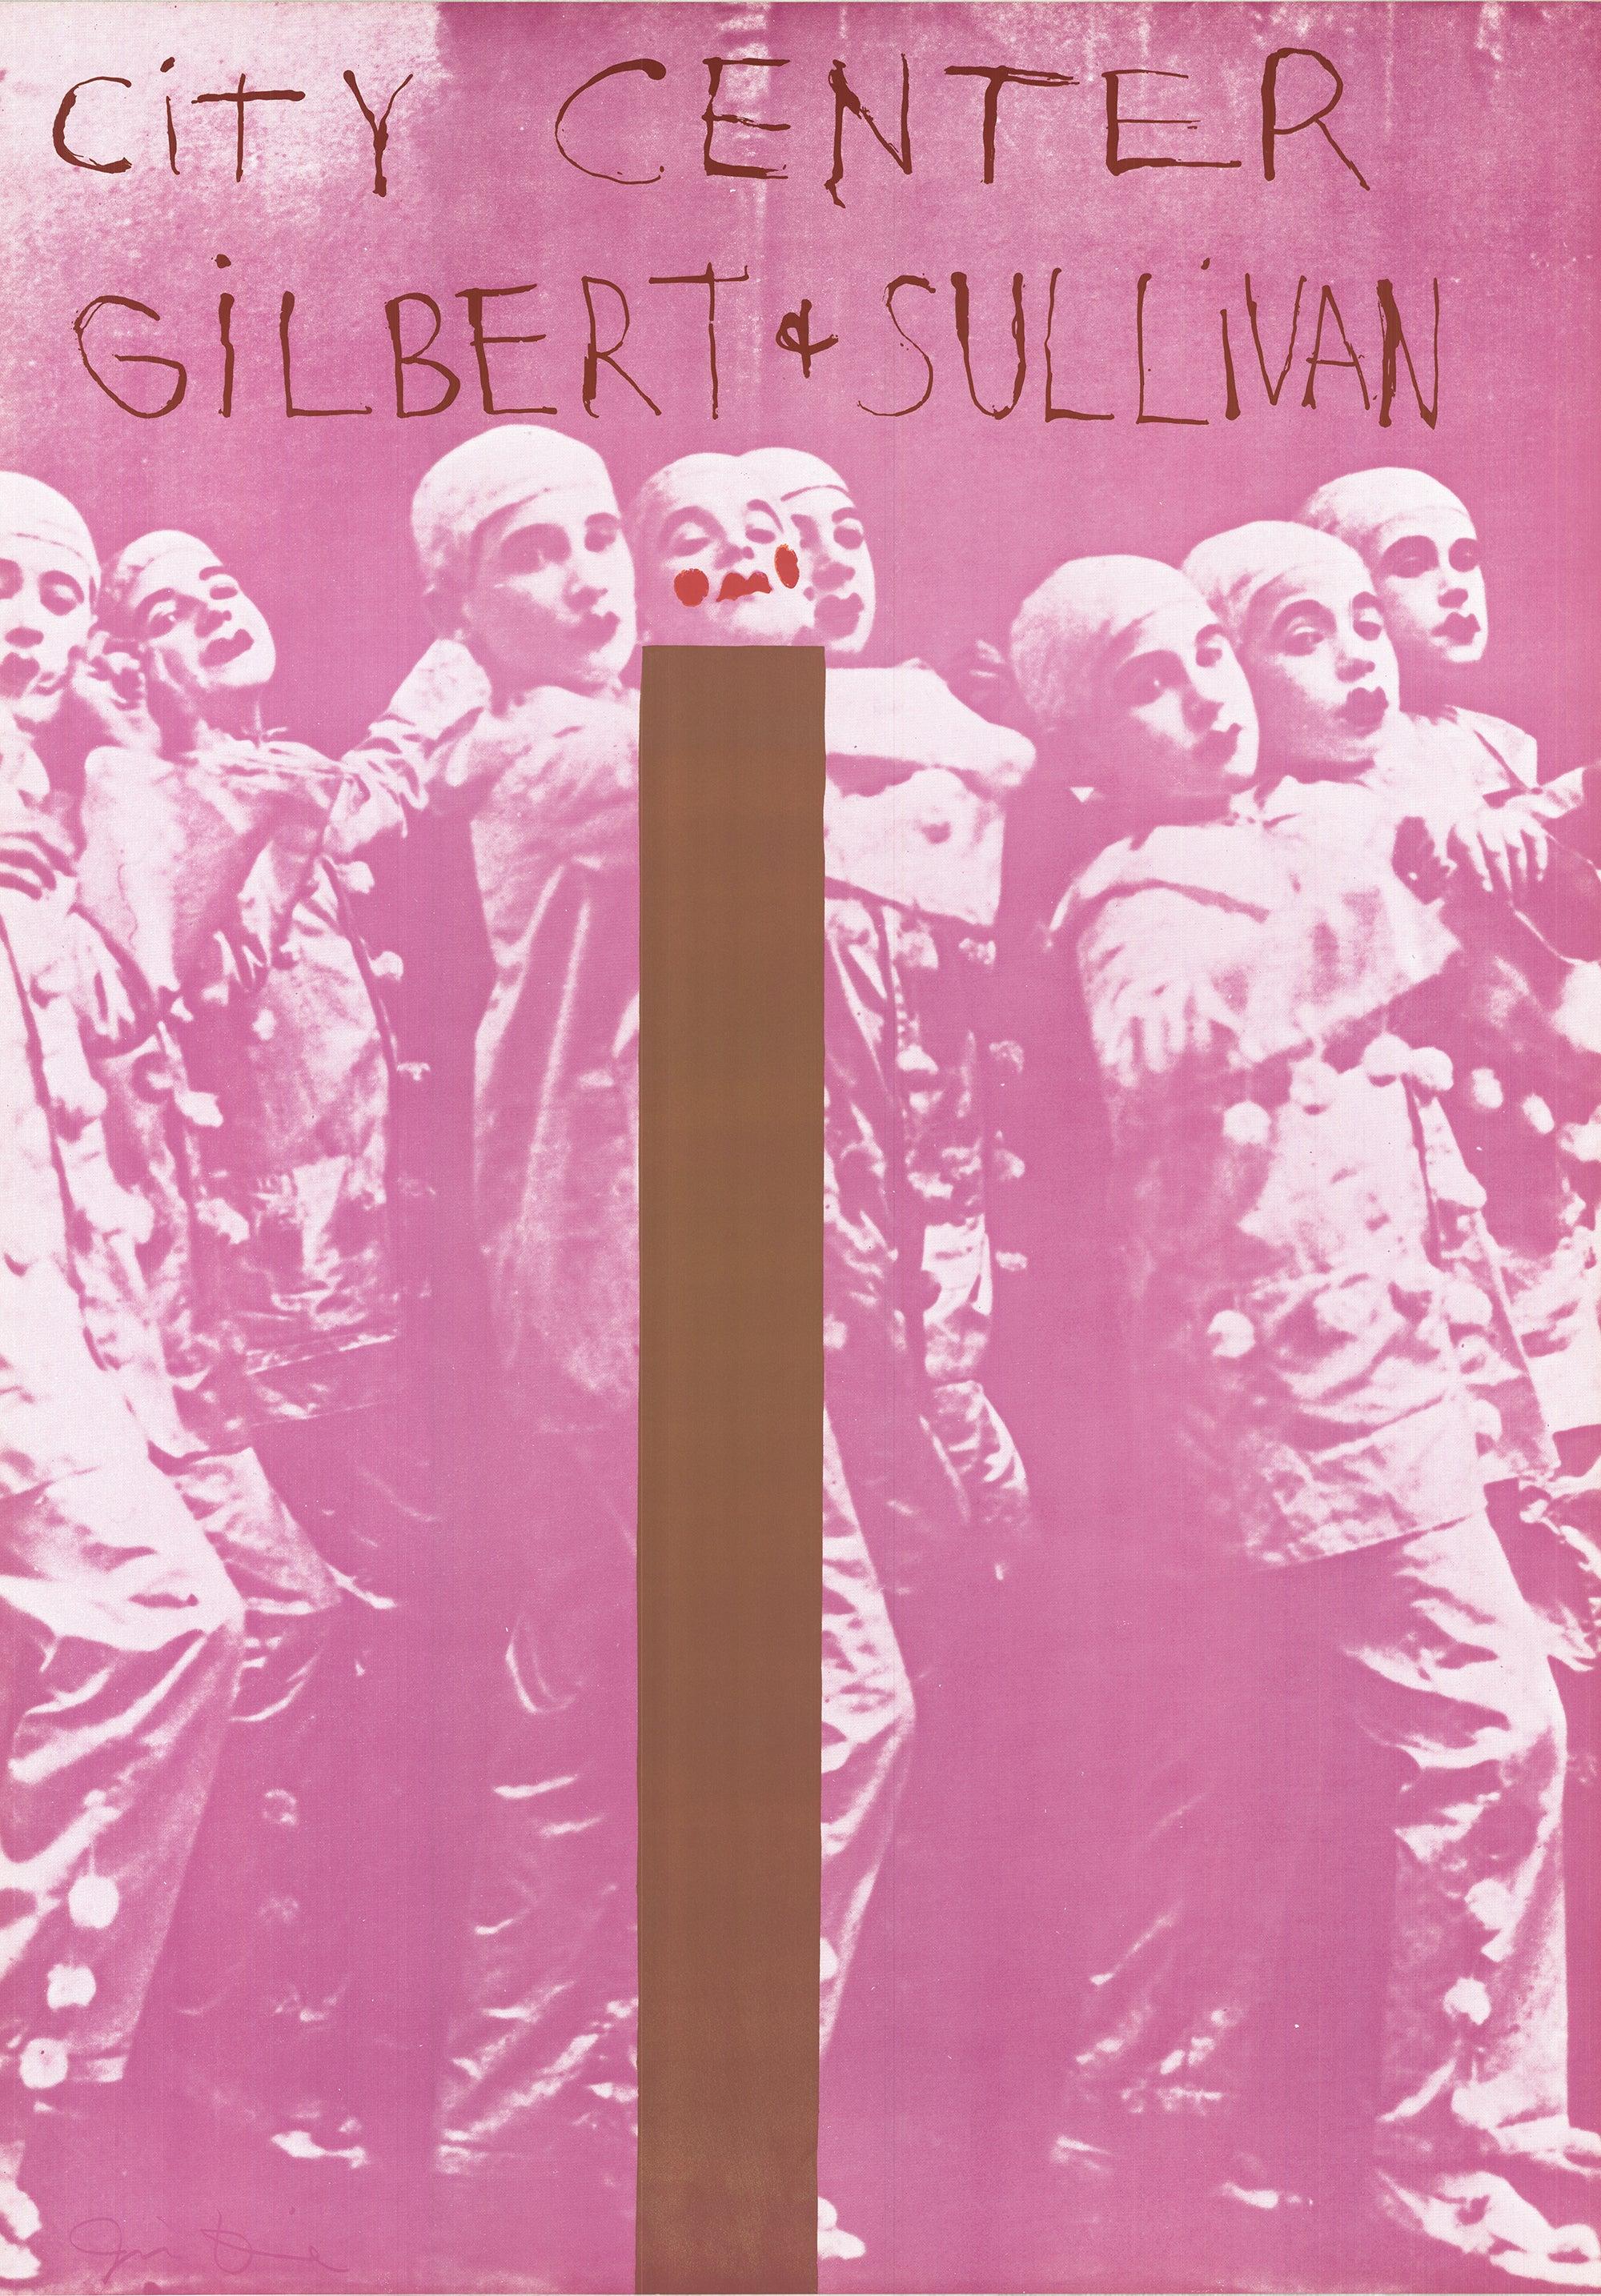 Affiche promotionnelle de Jim Dine pour une production de Gilbert et Sullivan au New York City Center, 1968

Cette affiche promotionnelle, conçue par Jim Dine, a été créée pour une production de Gilbert et Sullivan au New York City Center en 1968.